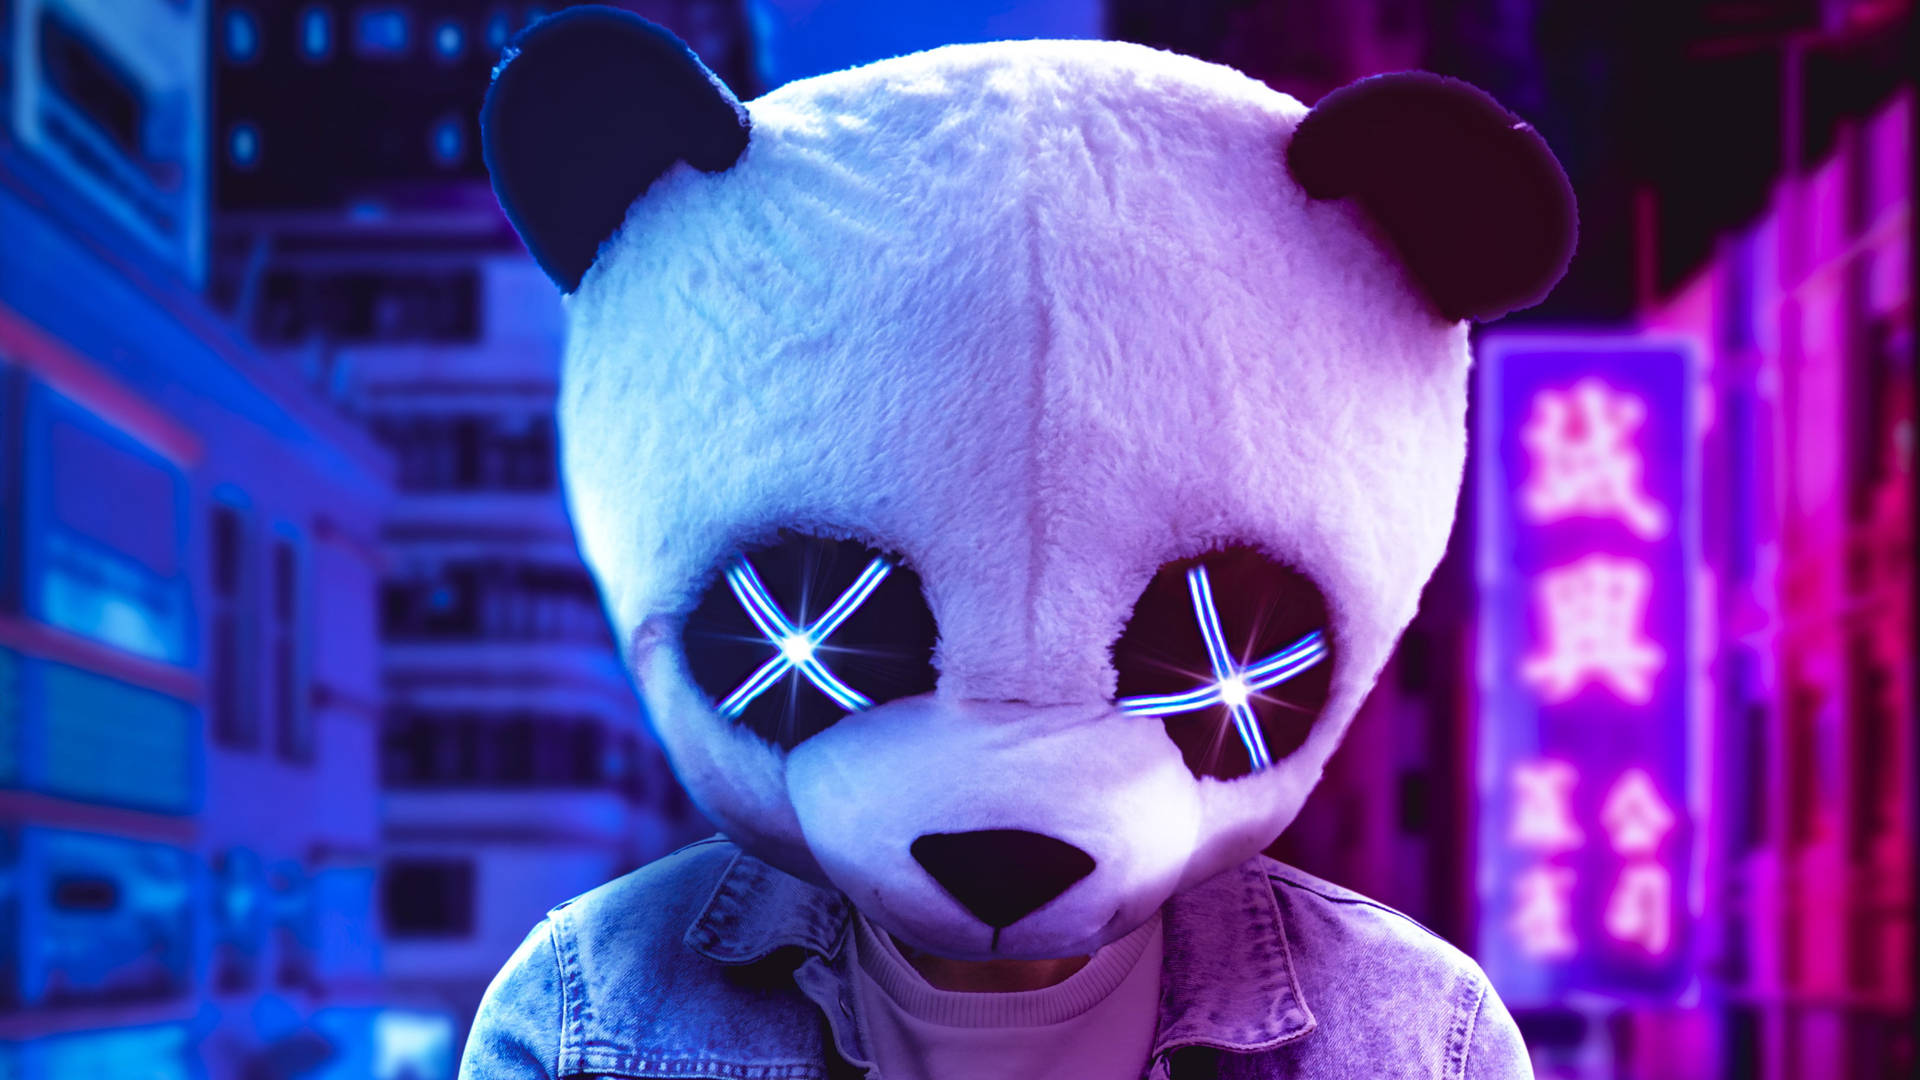 Neon Aesthetic Man With Panda Mask